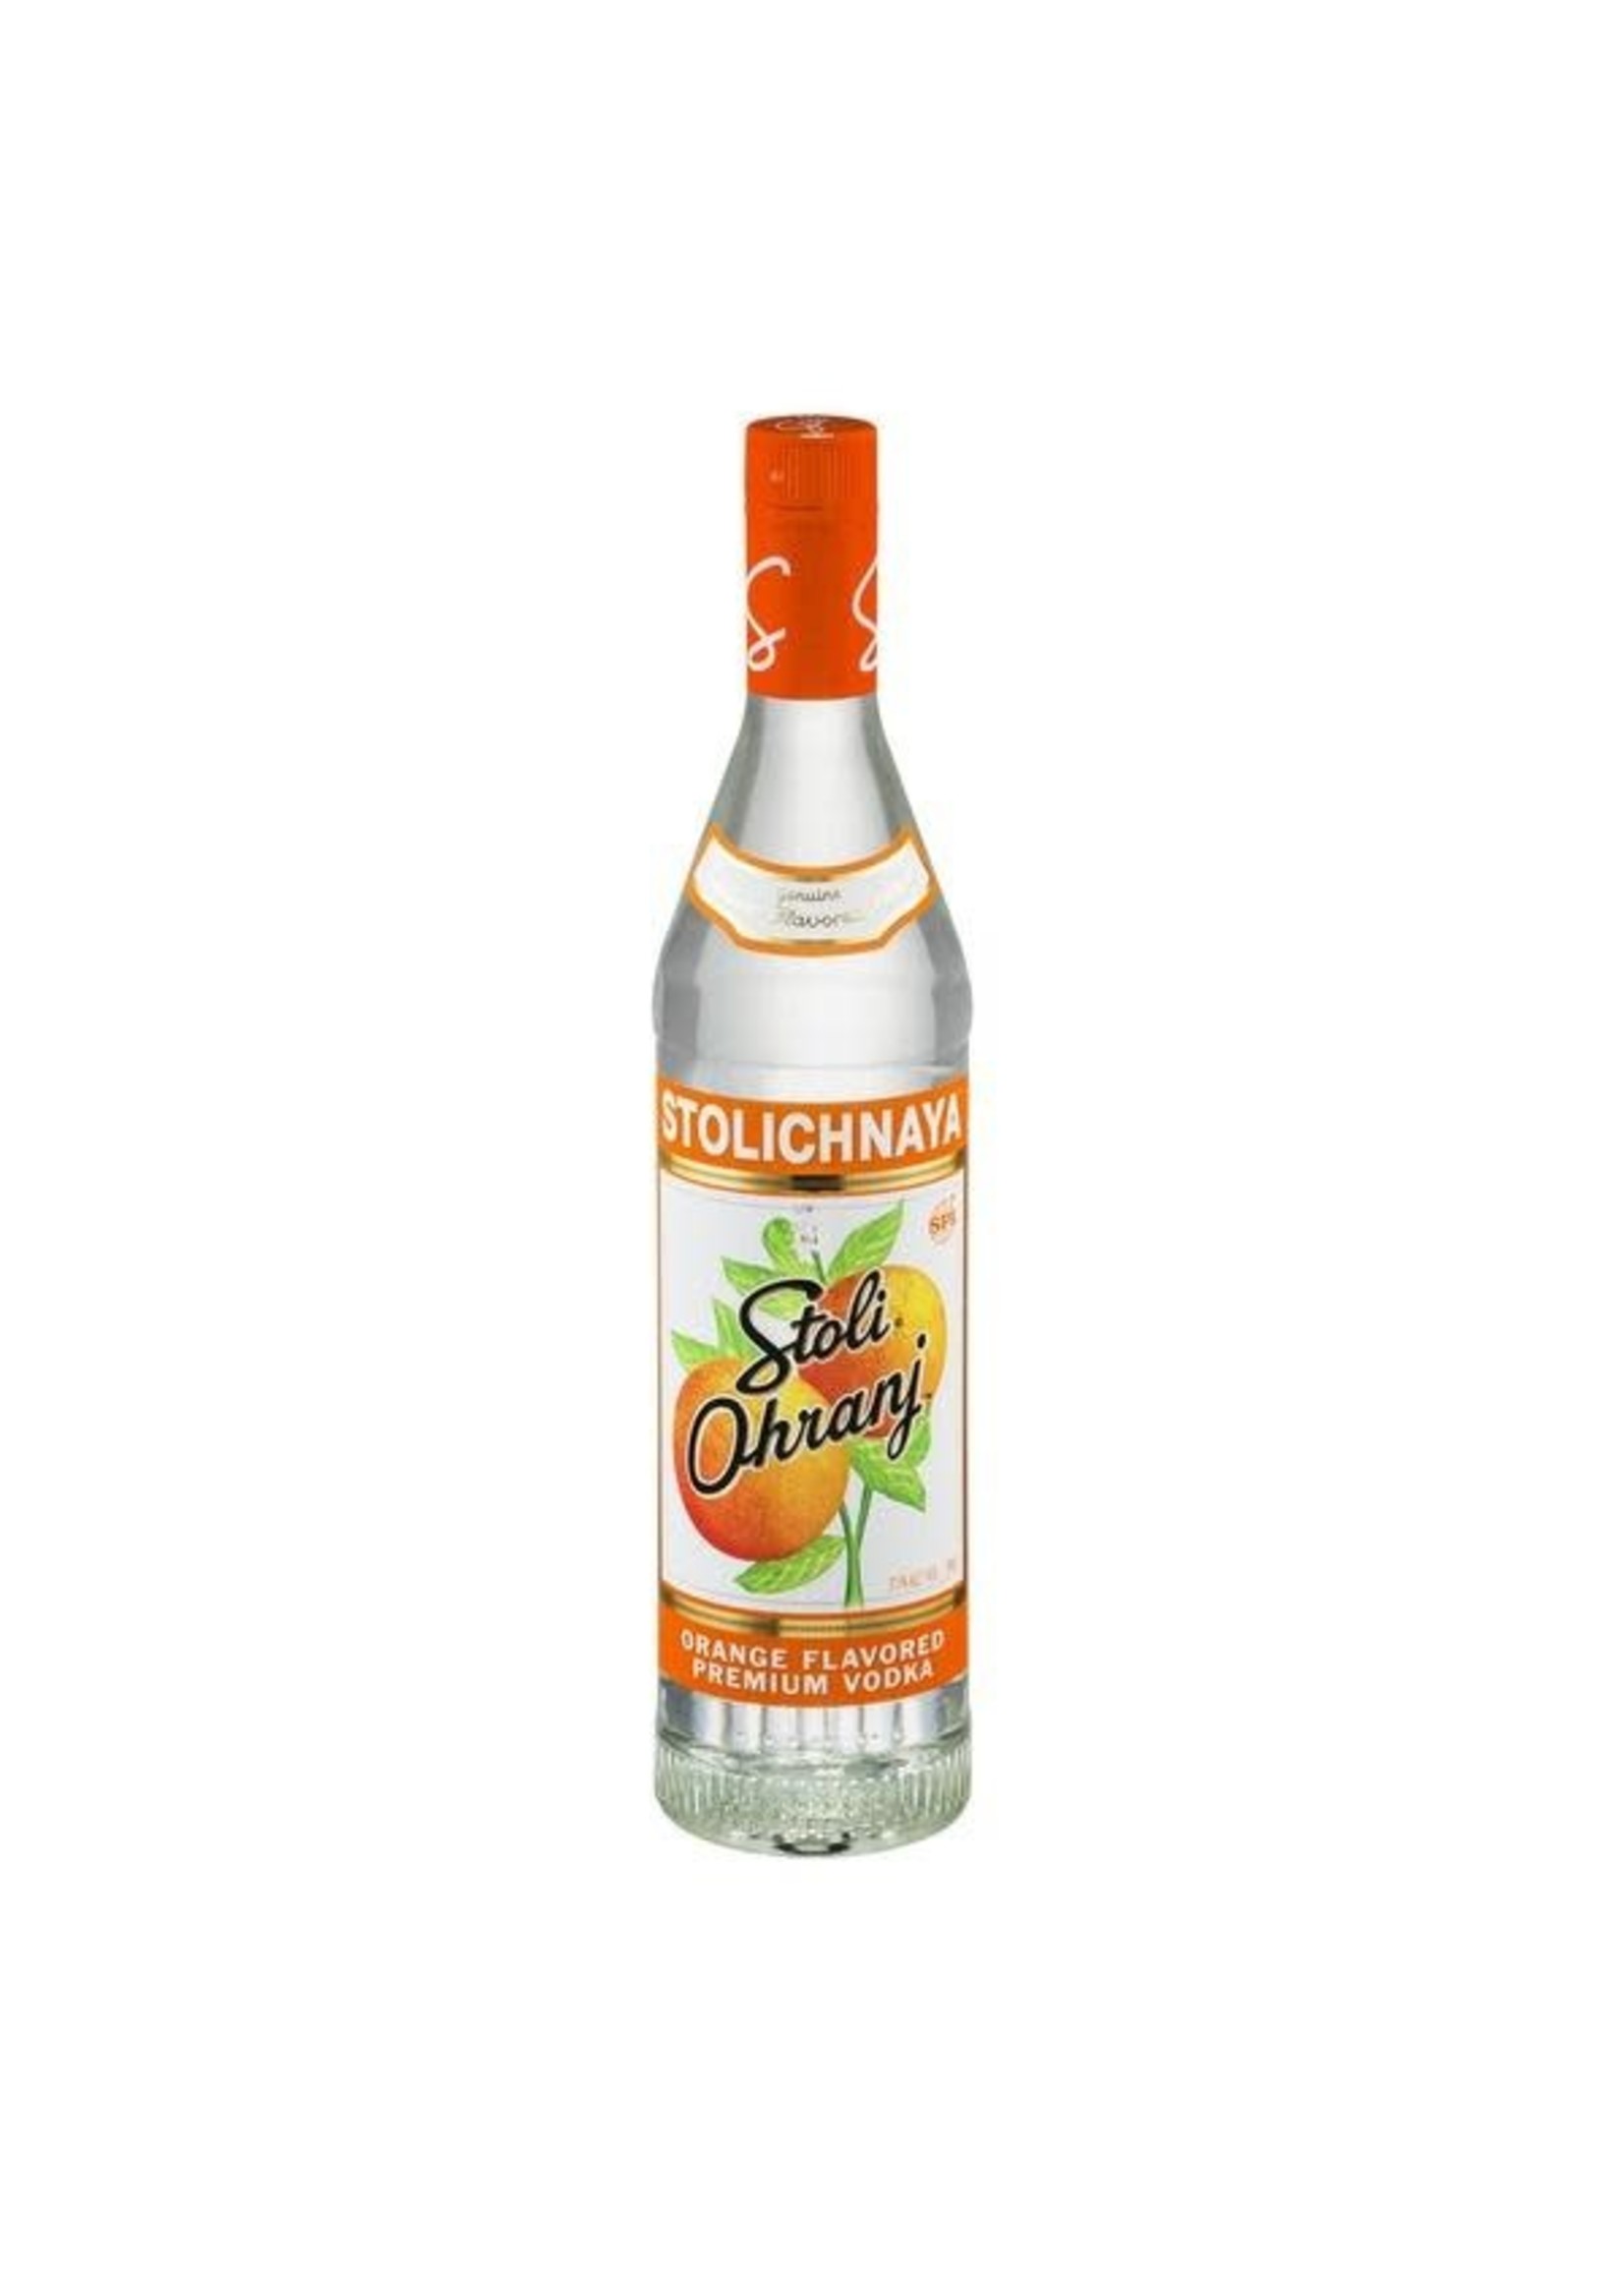 Stolichnaya Stolichnaya / Ohranj Orange Vodka / 750mL